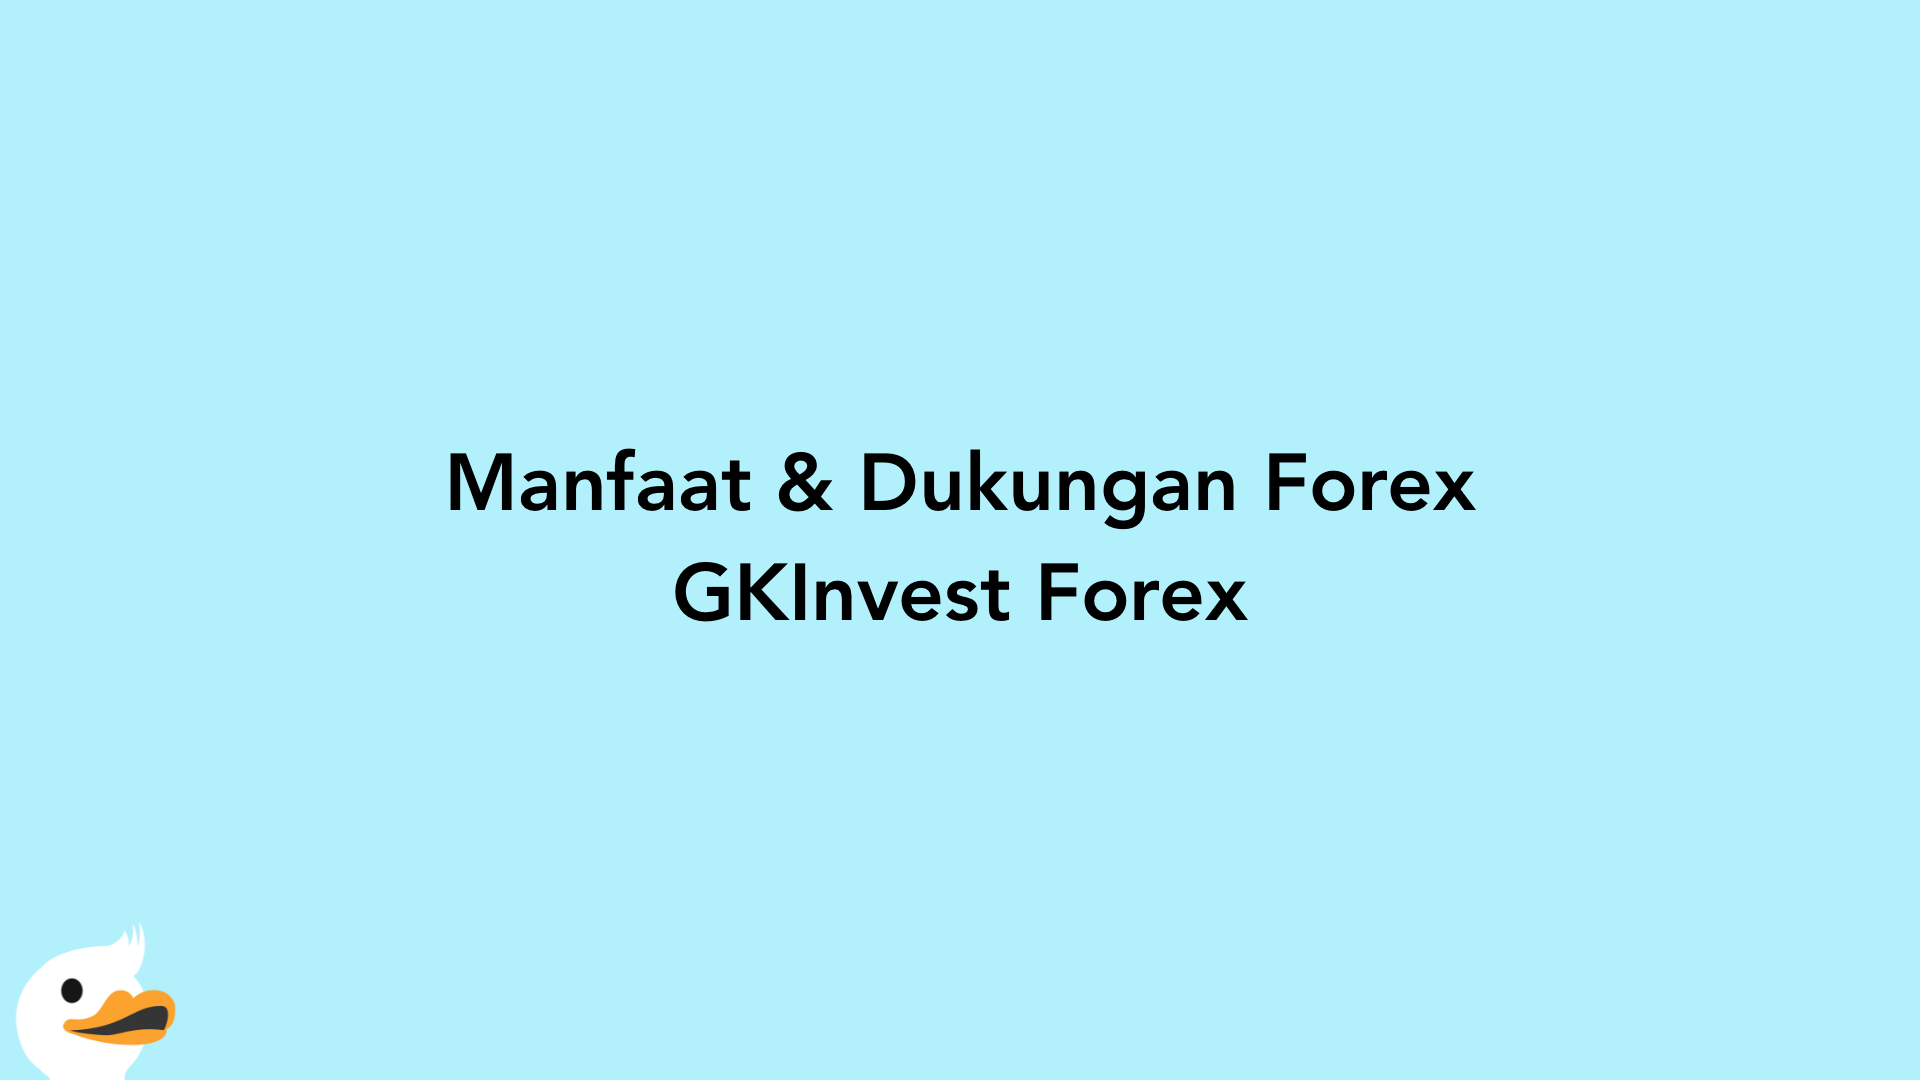 Manfaat & Dukungan Forex GKInvest Forex